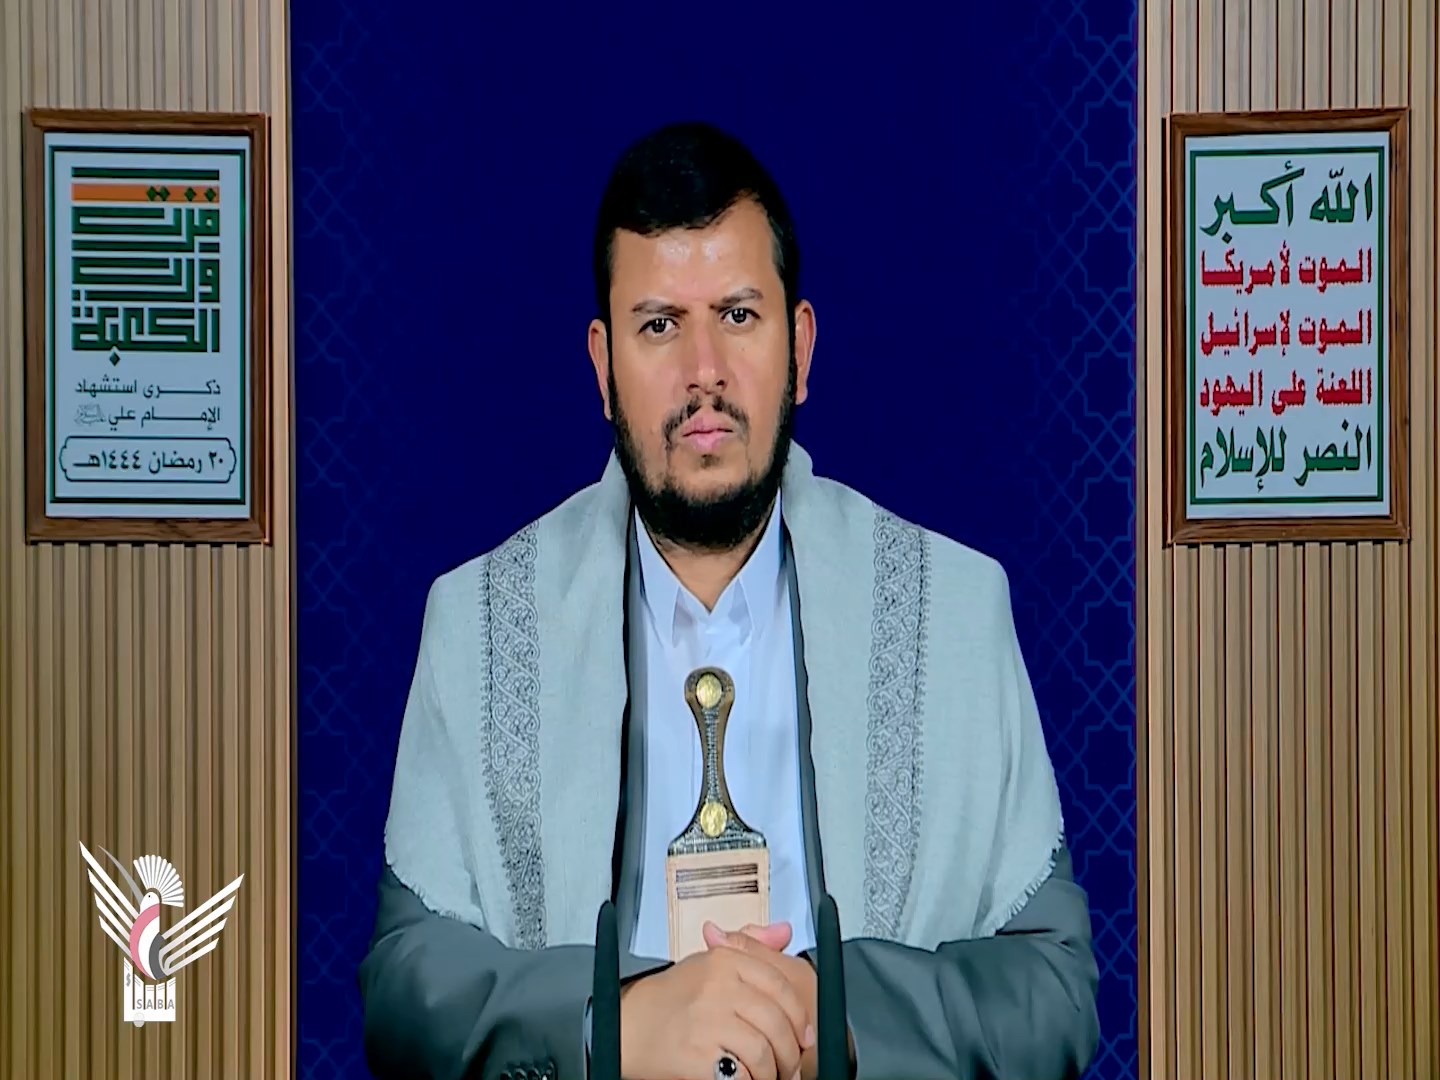 محاضرة اليوم العشرين من رمضان للسيد عبدالملك بدر الدين الحوثي